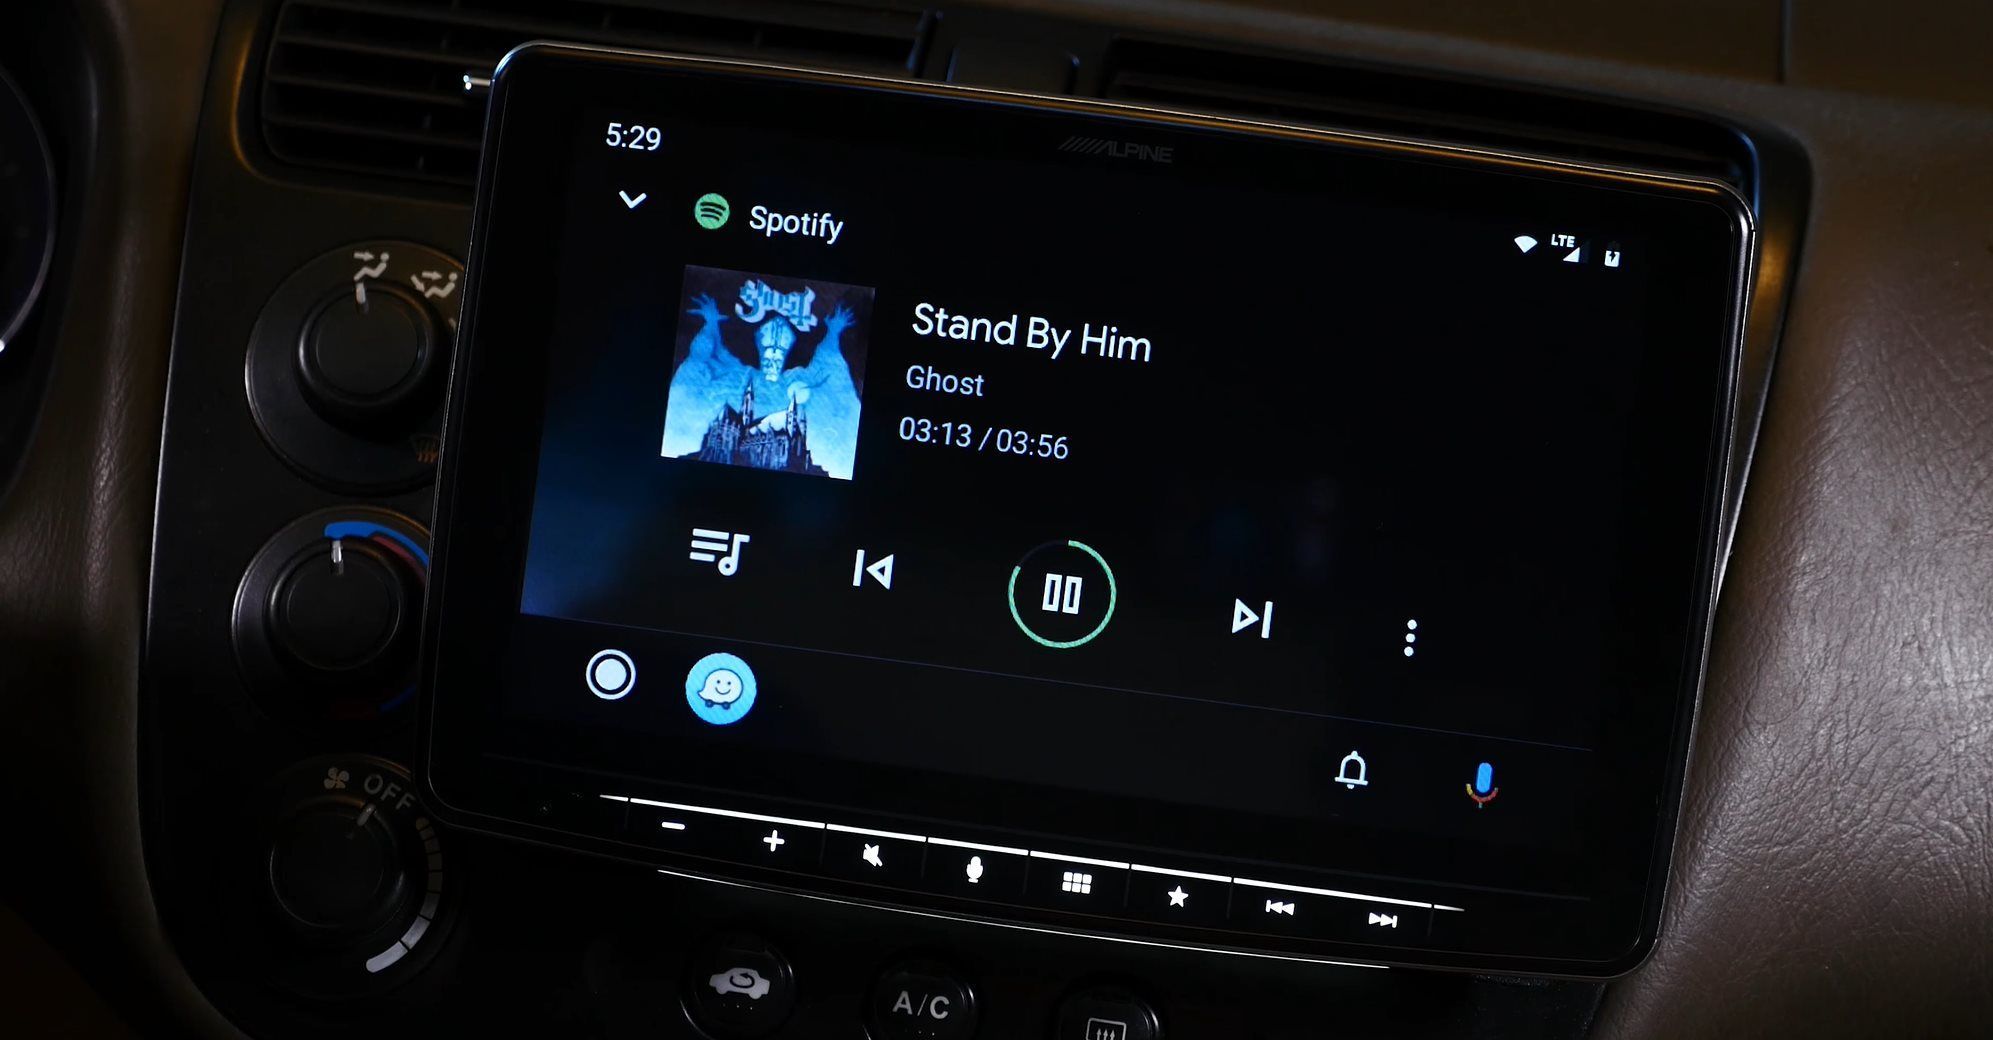 قابلیت Android Auto در اسپاتیفای و اتصال اسپاتیفای به ماشین